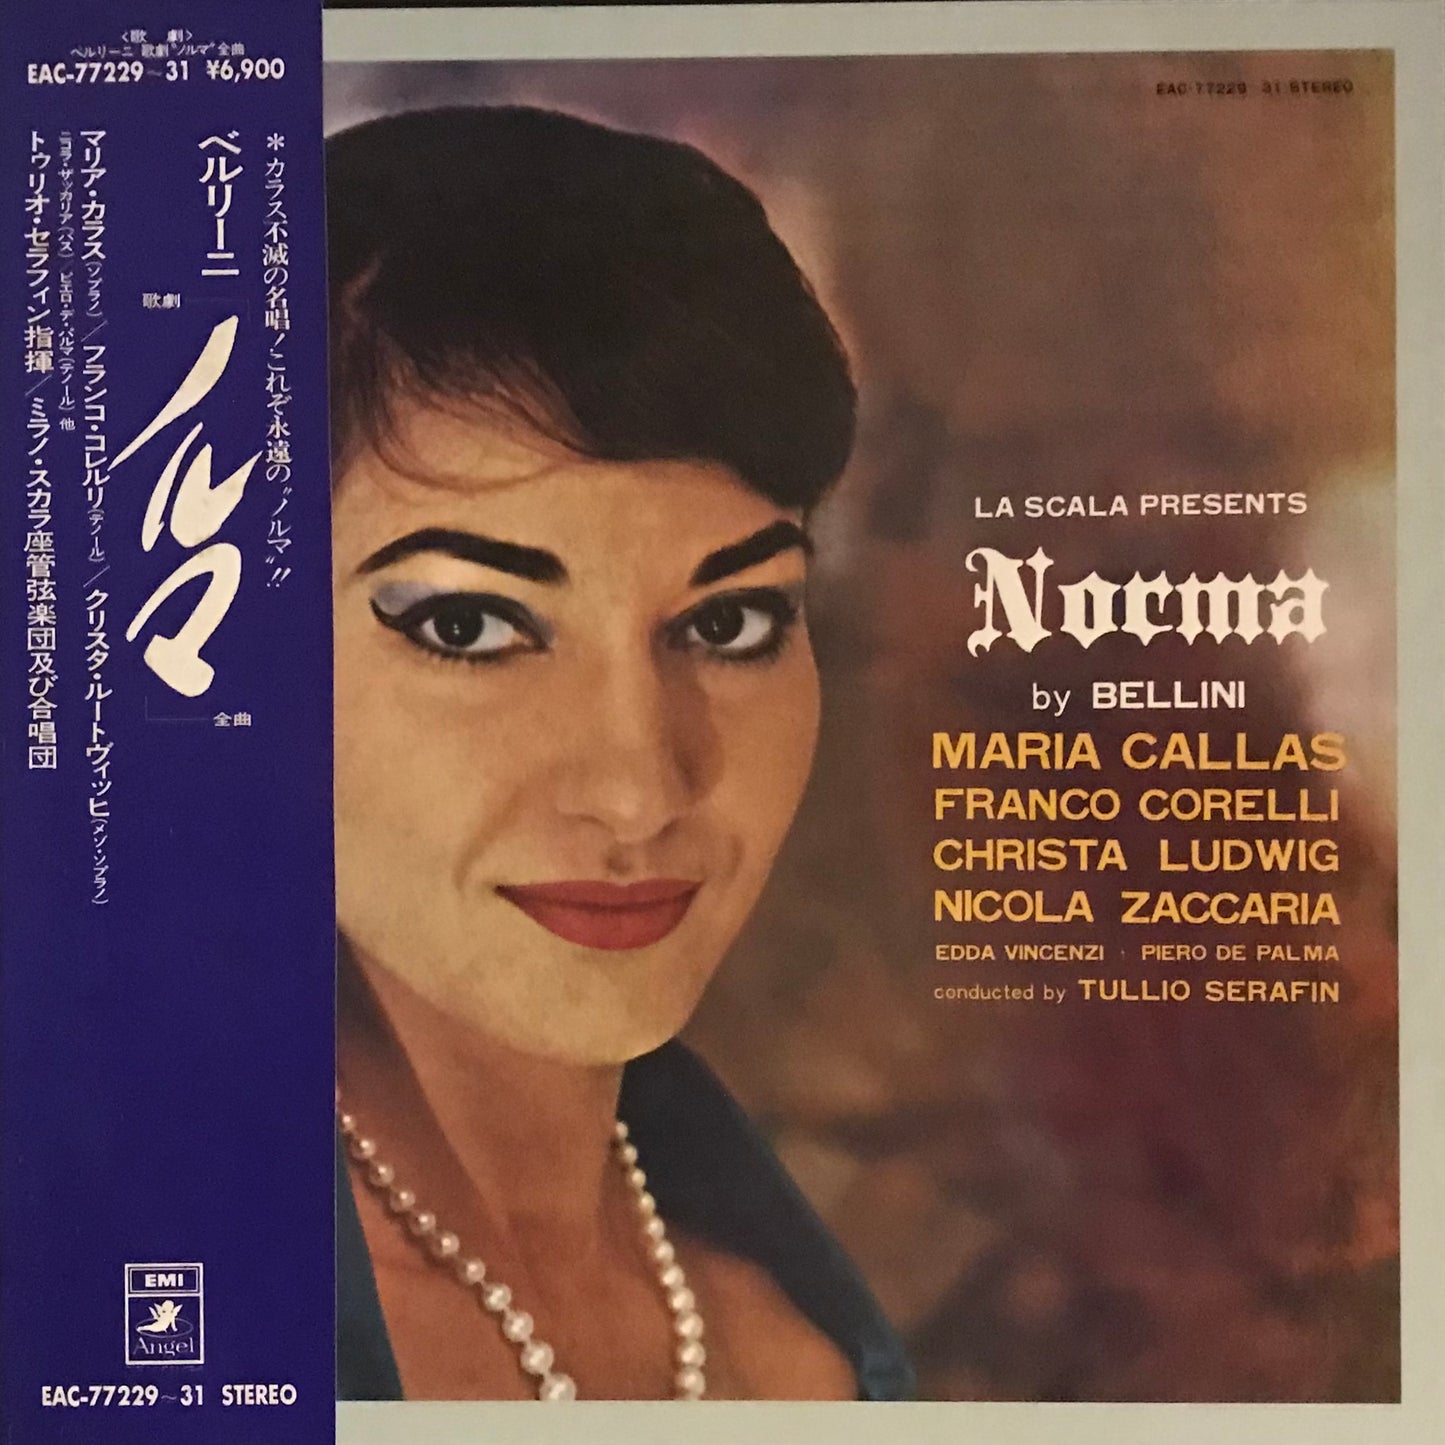 La Scala Present- “Norma” by Bellini( Box Set No.45)